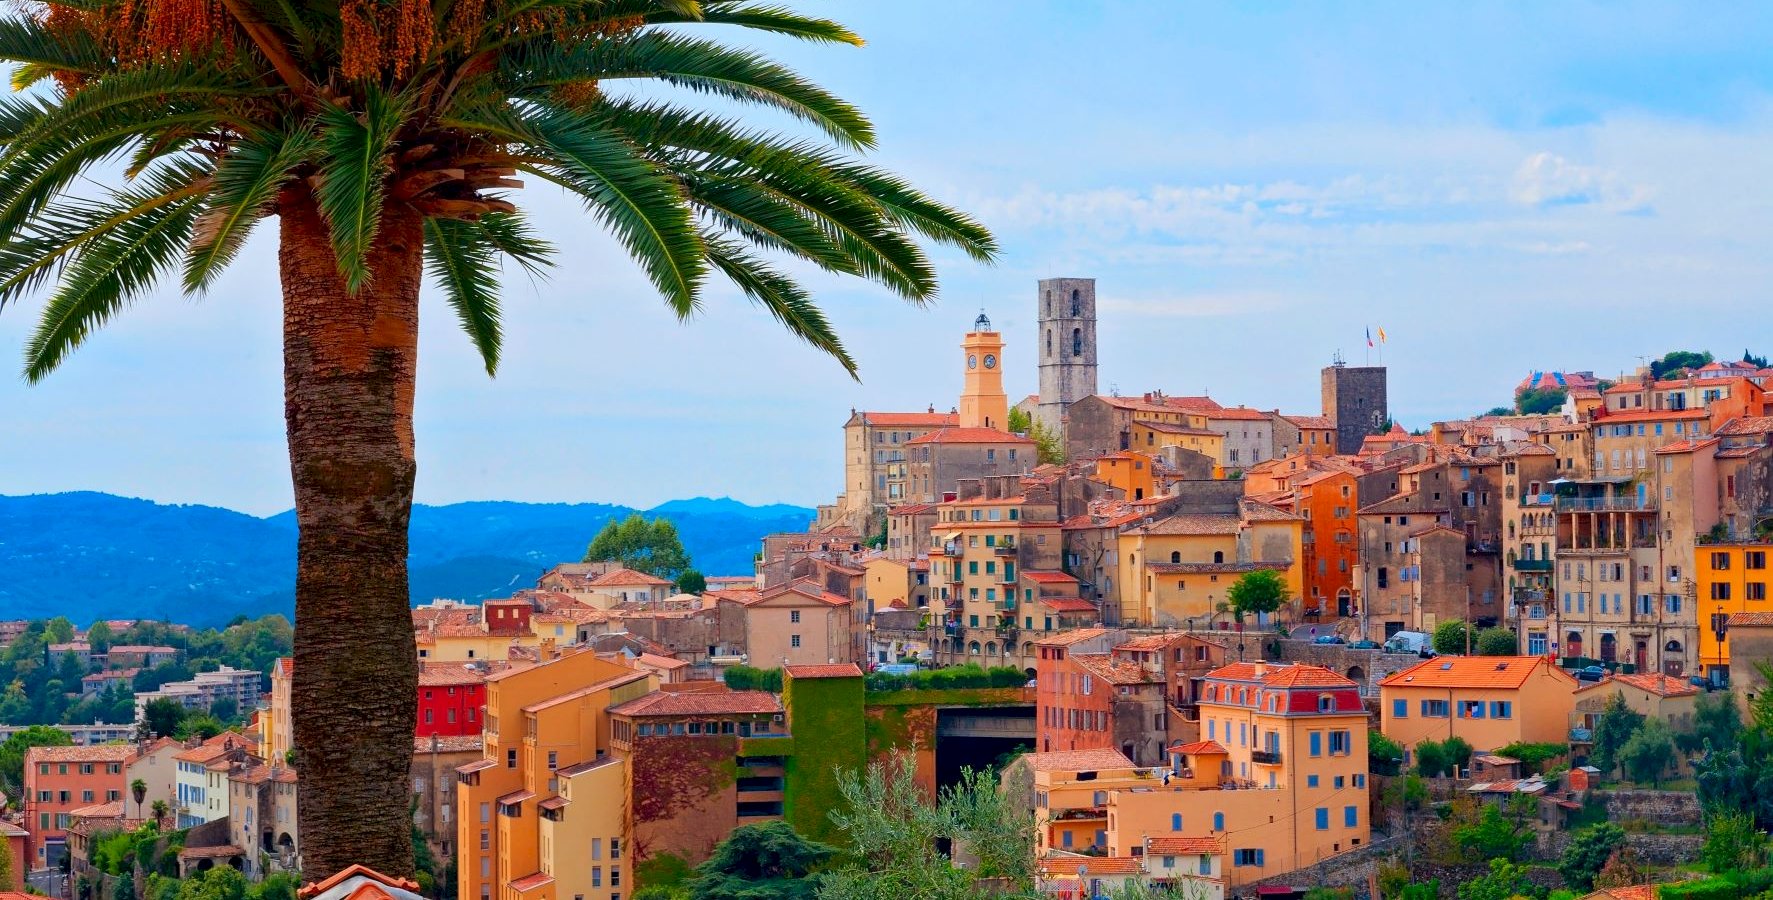 Ophorus Tours - A Private Shore Excursion From Monaco to Cannes, Grasse, Gourdon & St Paul de Vence villages 